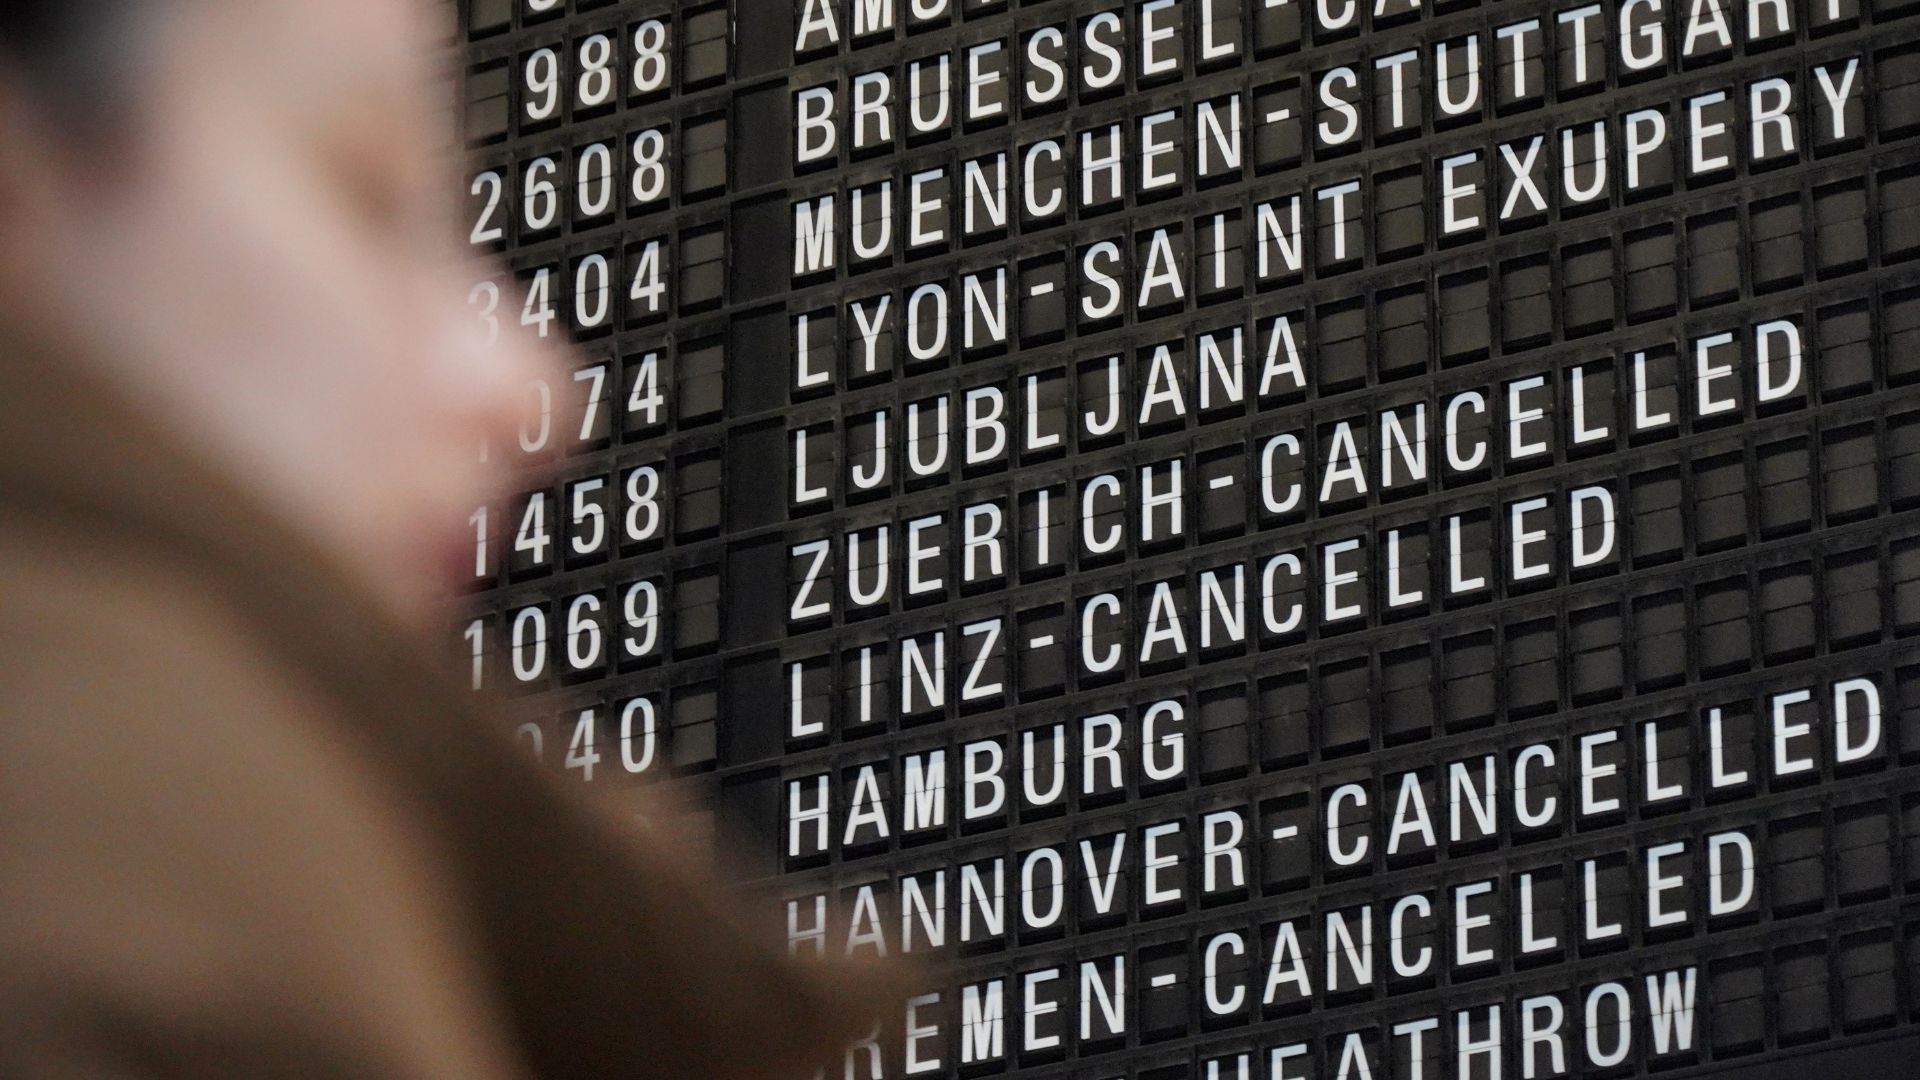 Cancelled flights in Berlin. /CGTN